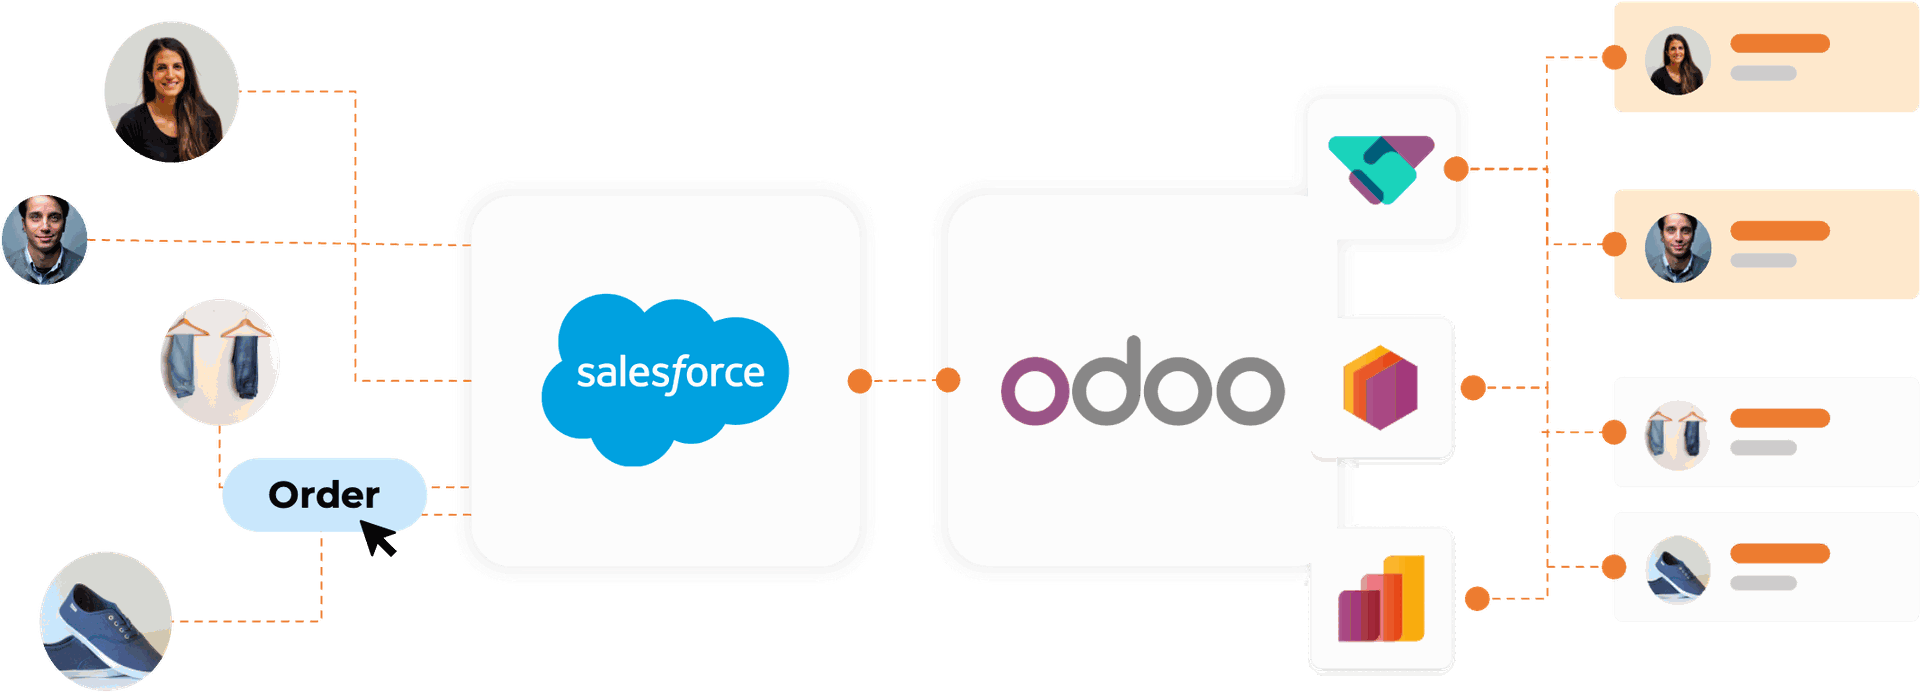 Integración Odoo Salesforce